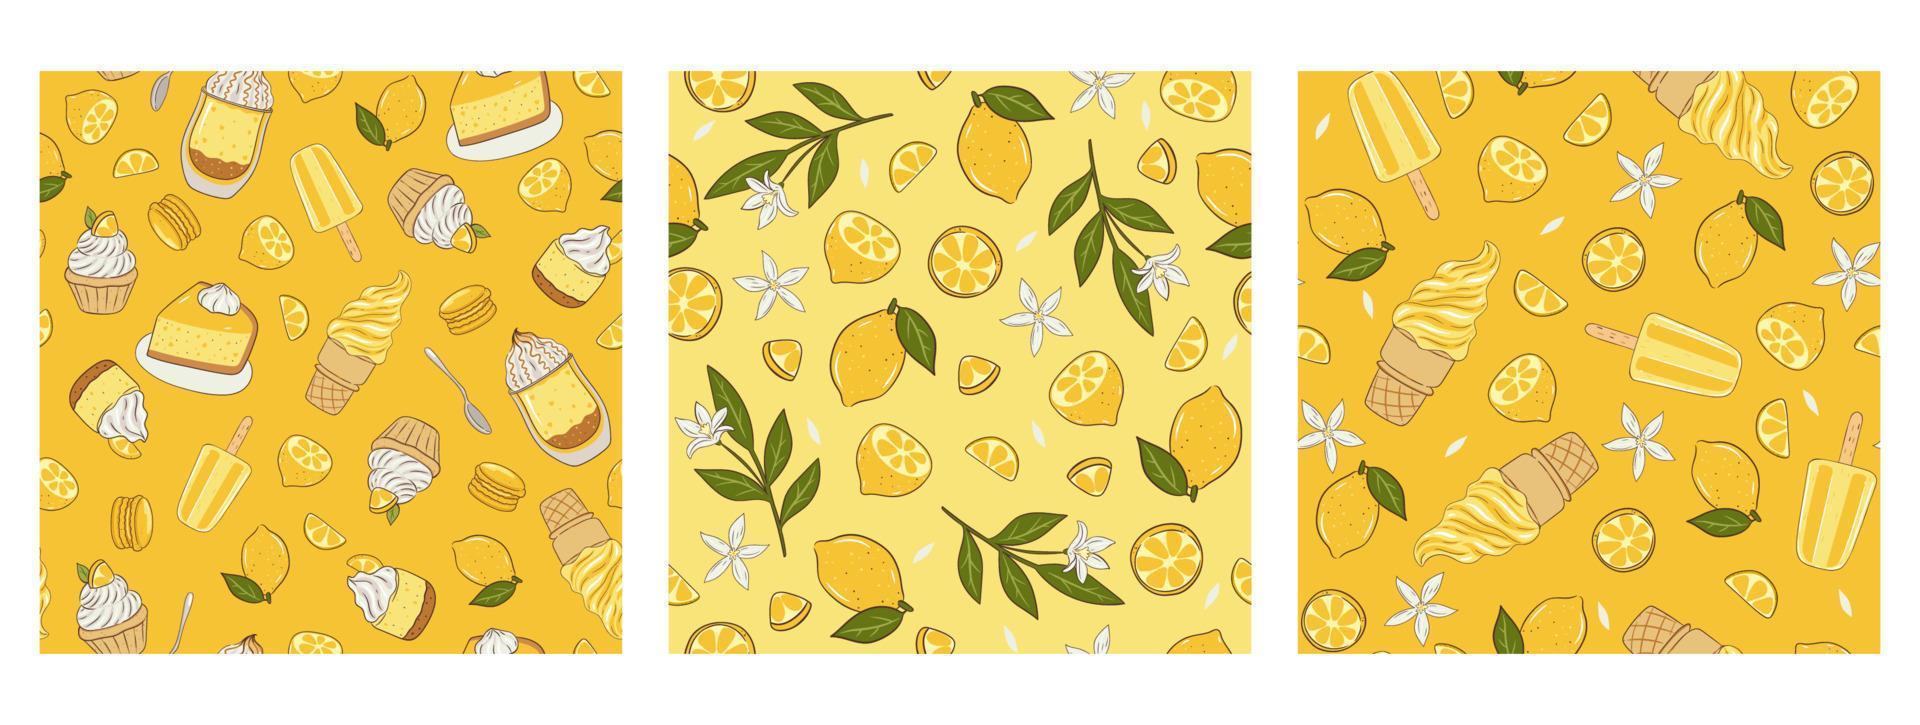 uppsättning av mönster med citroner och desserter. vektor grafik.